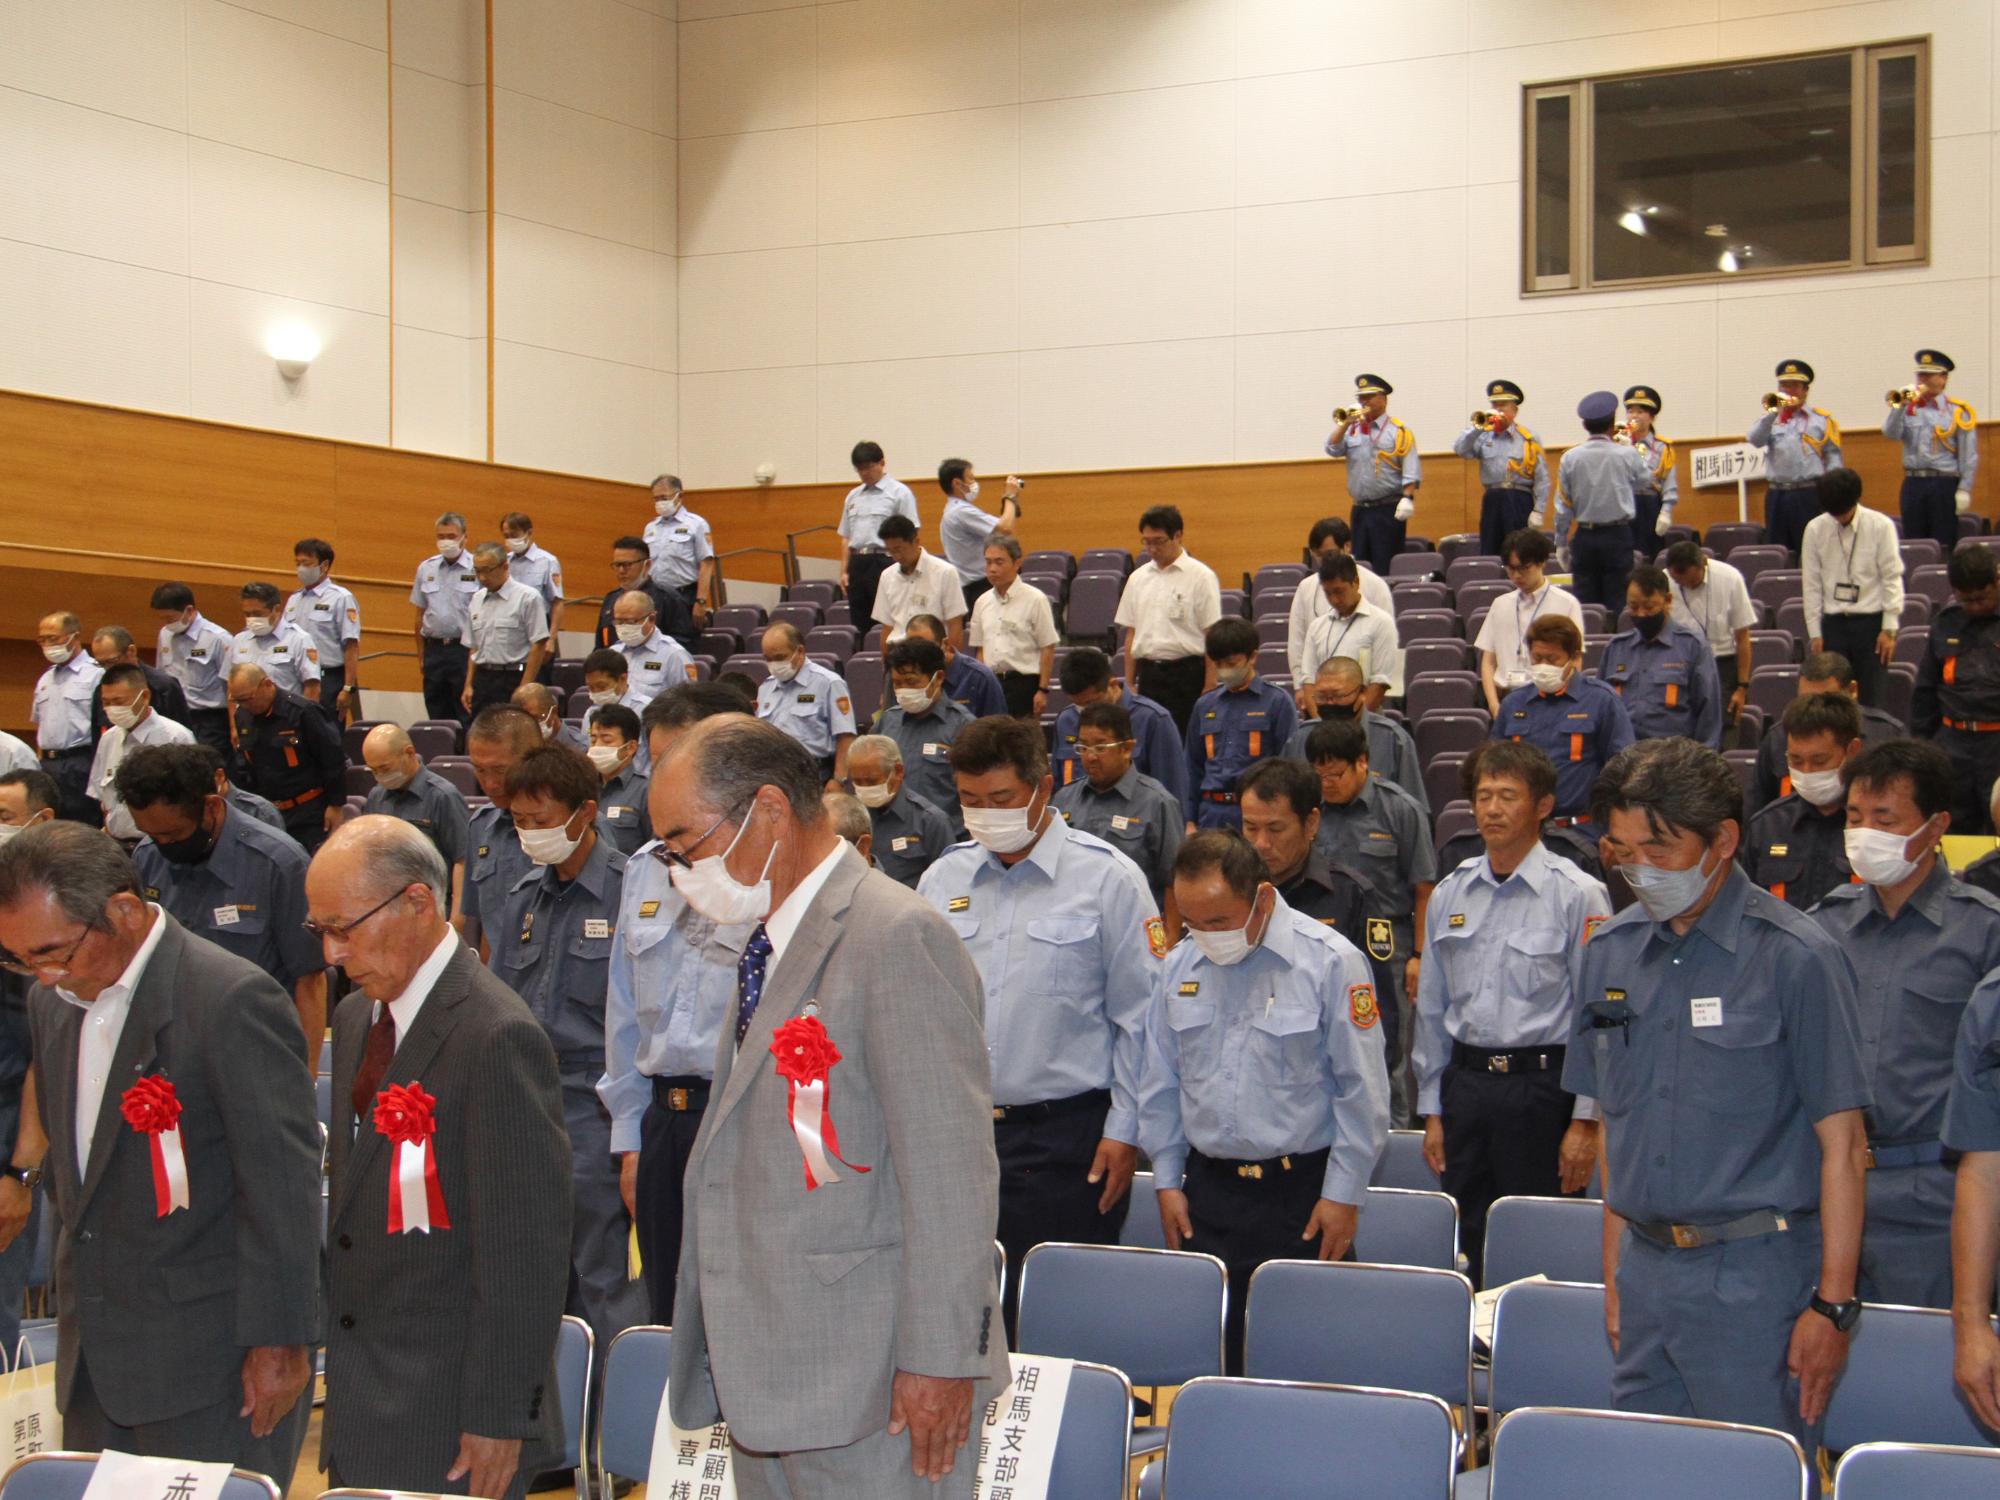 県消防協会相馬支部幹部大会で、殉職した消防職団員に対し黙とうを捧げる様子